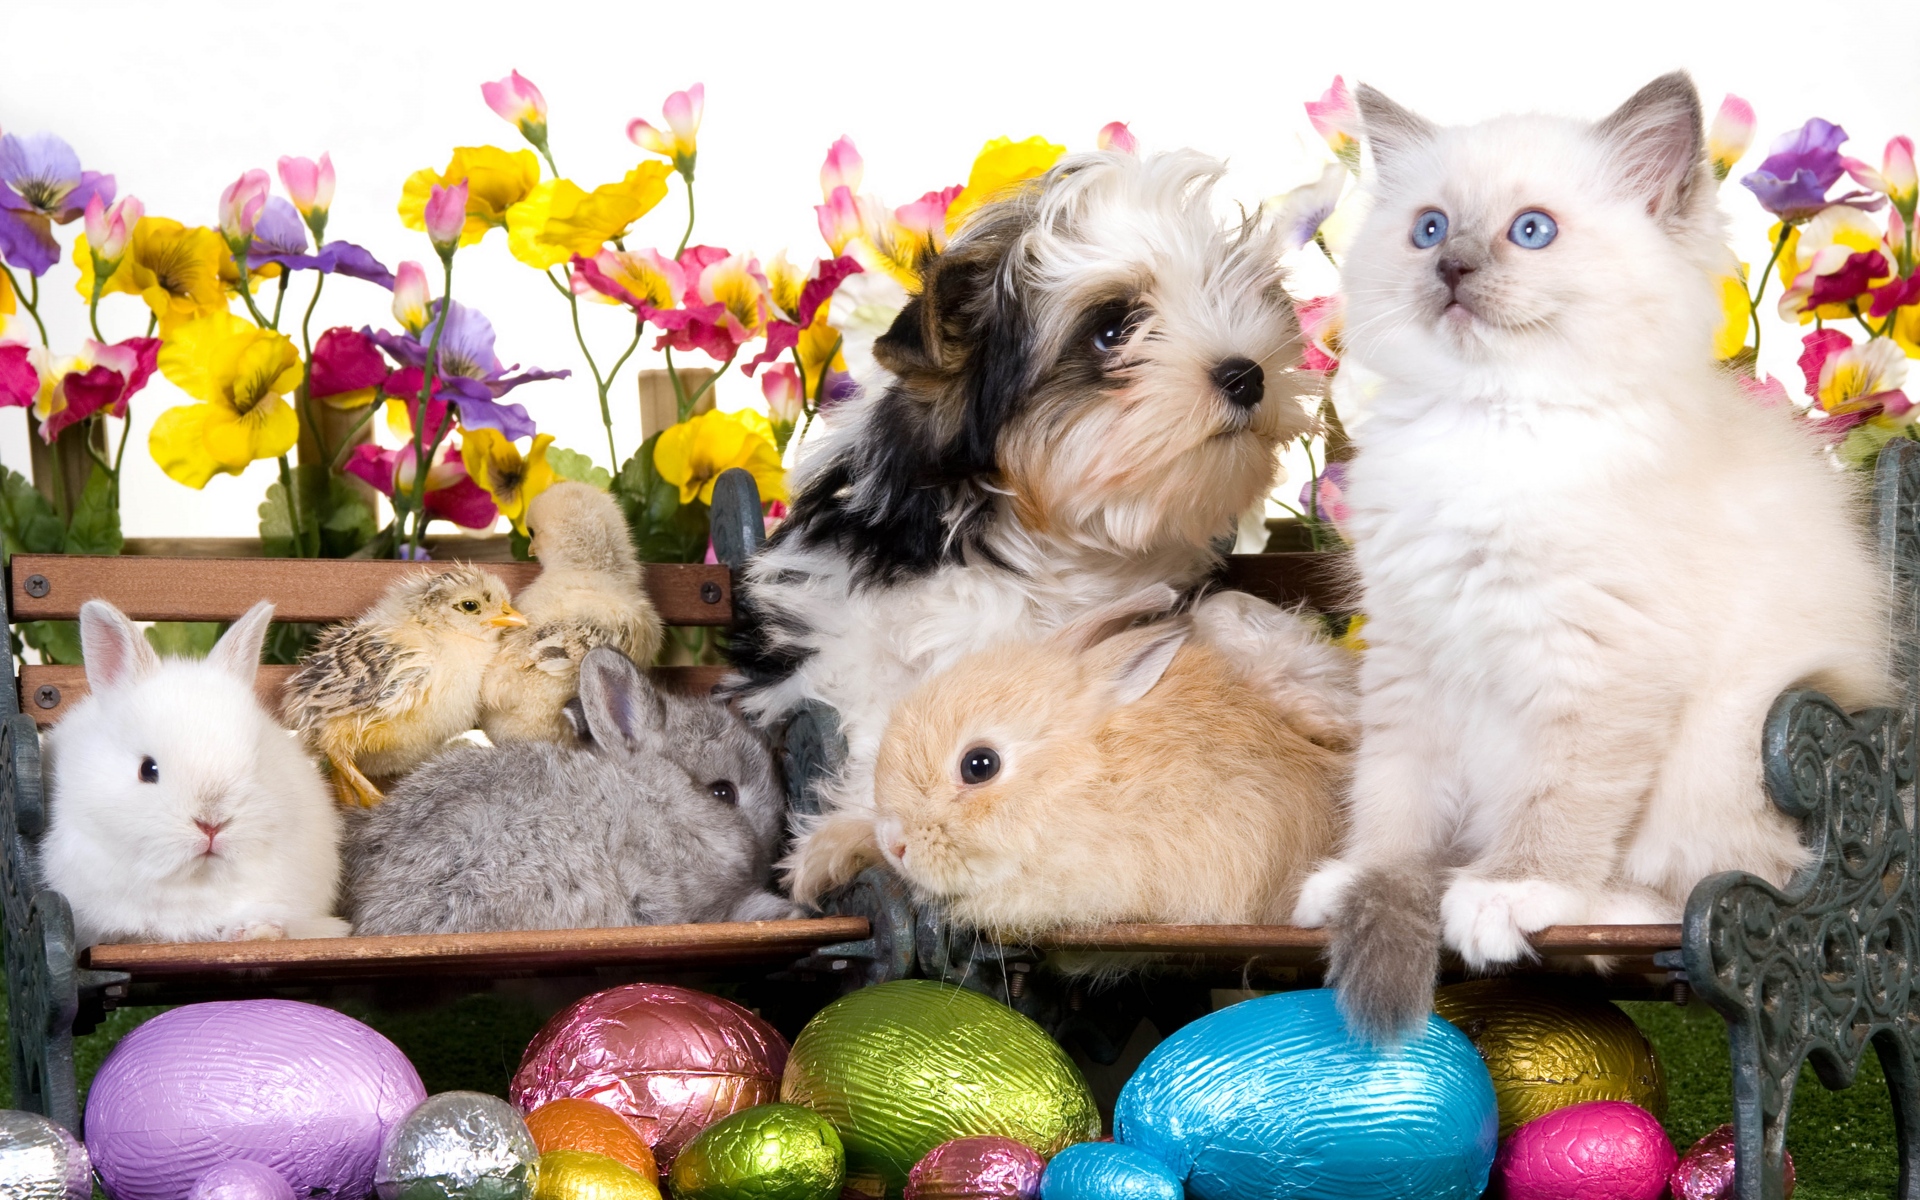 Картинки животных, Пасха, яйцо, скамейки, кролик, кролик, щенок, котенок, курица, цветы фото и обои на рабочий стол